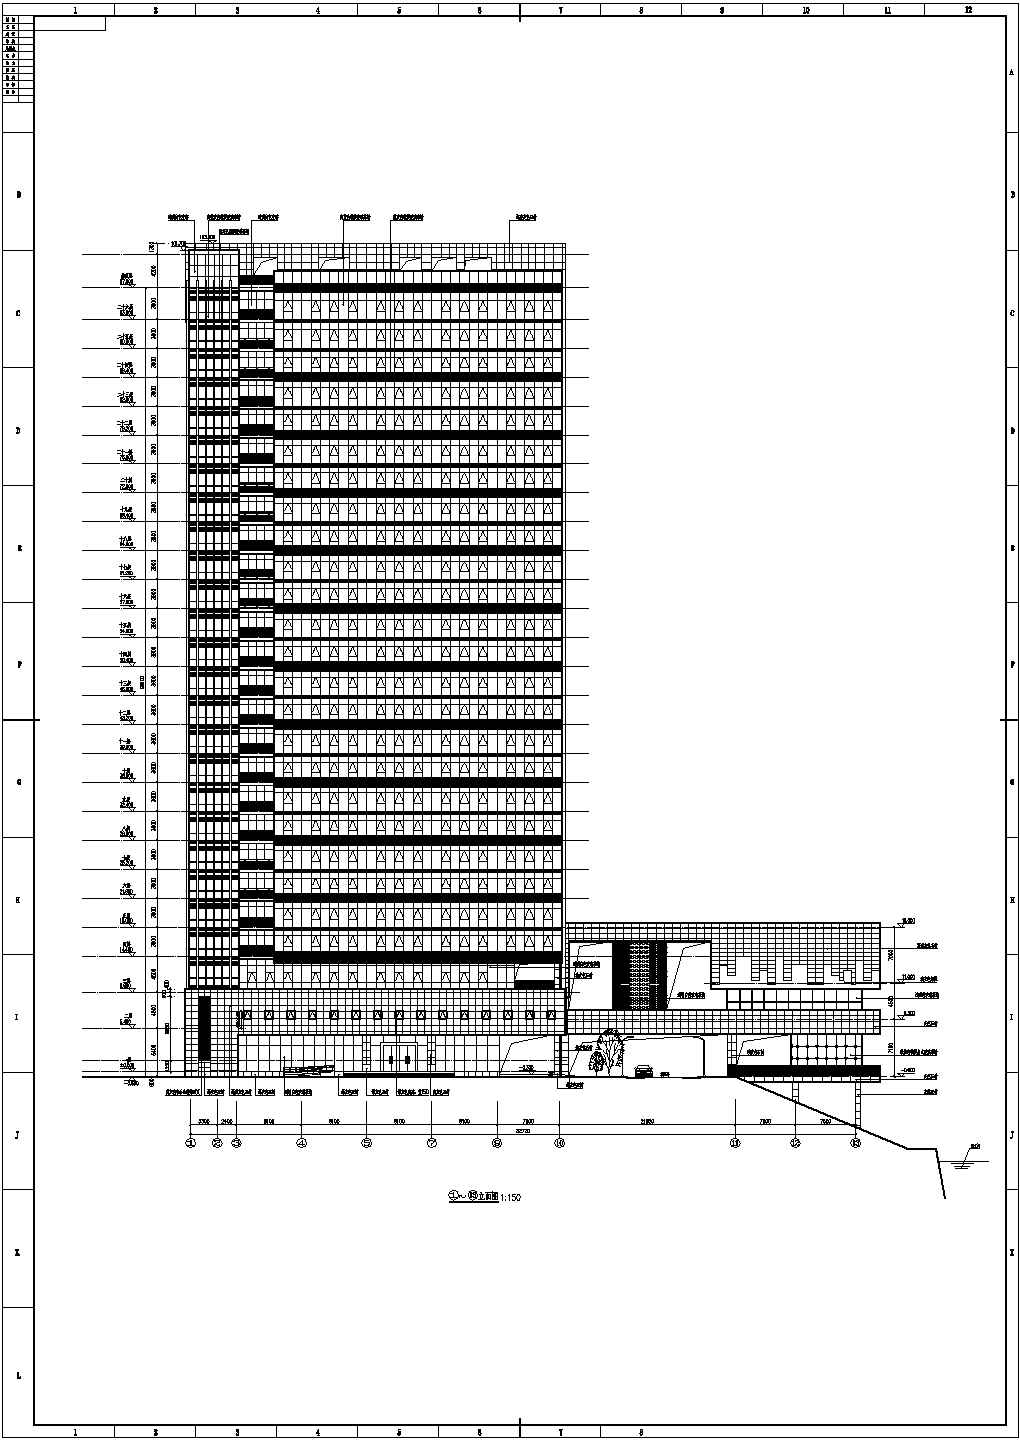 【湖北】某县二十六层档案馆综合楼建筑施工图